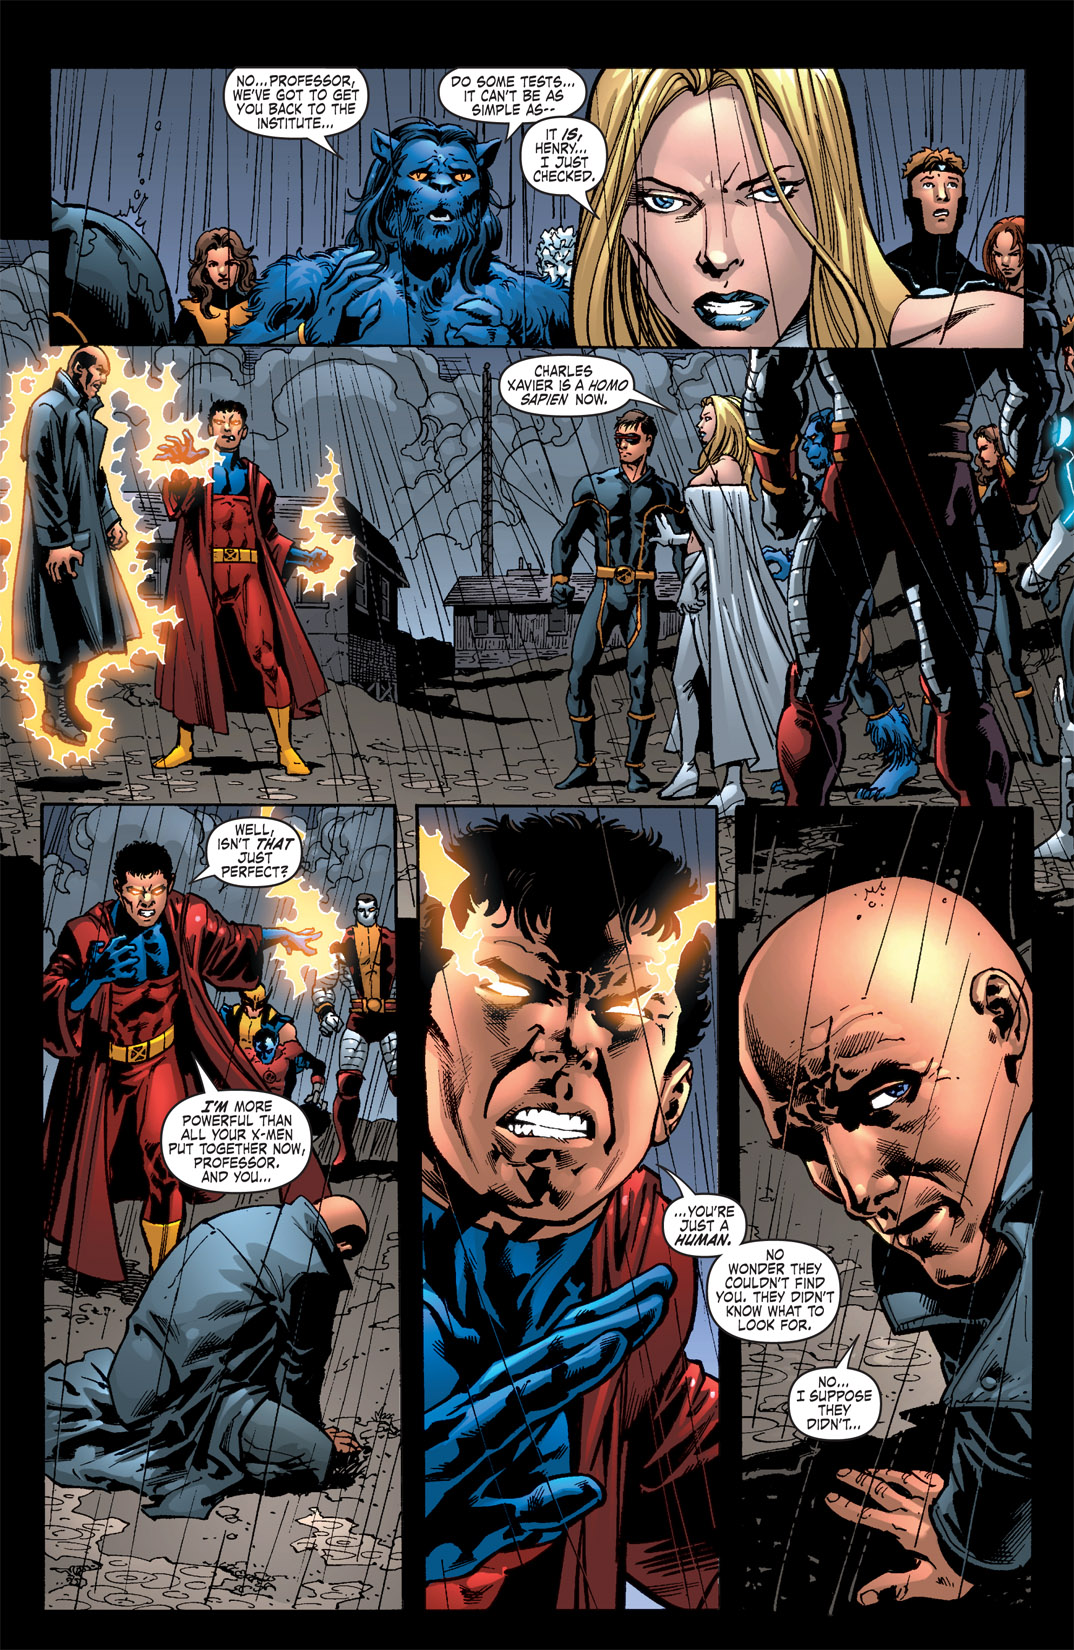 1000 - Les comics que vous lisez en ce moment - Page 29 Deadly-genesis-vulcan-xavier